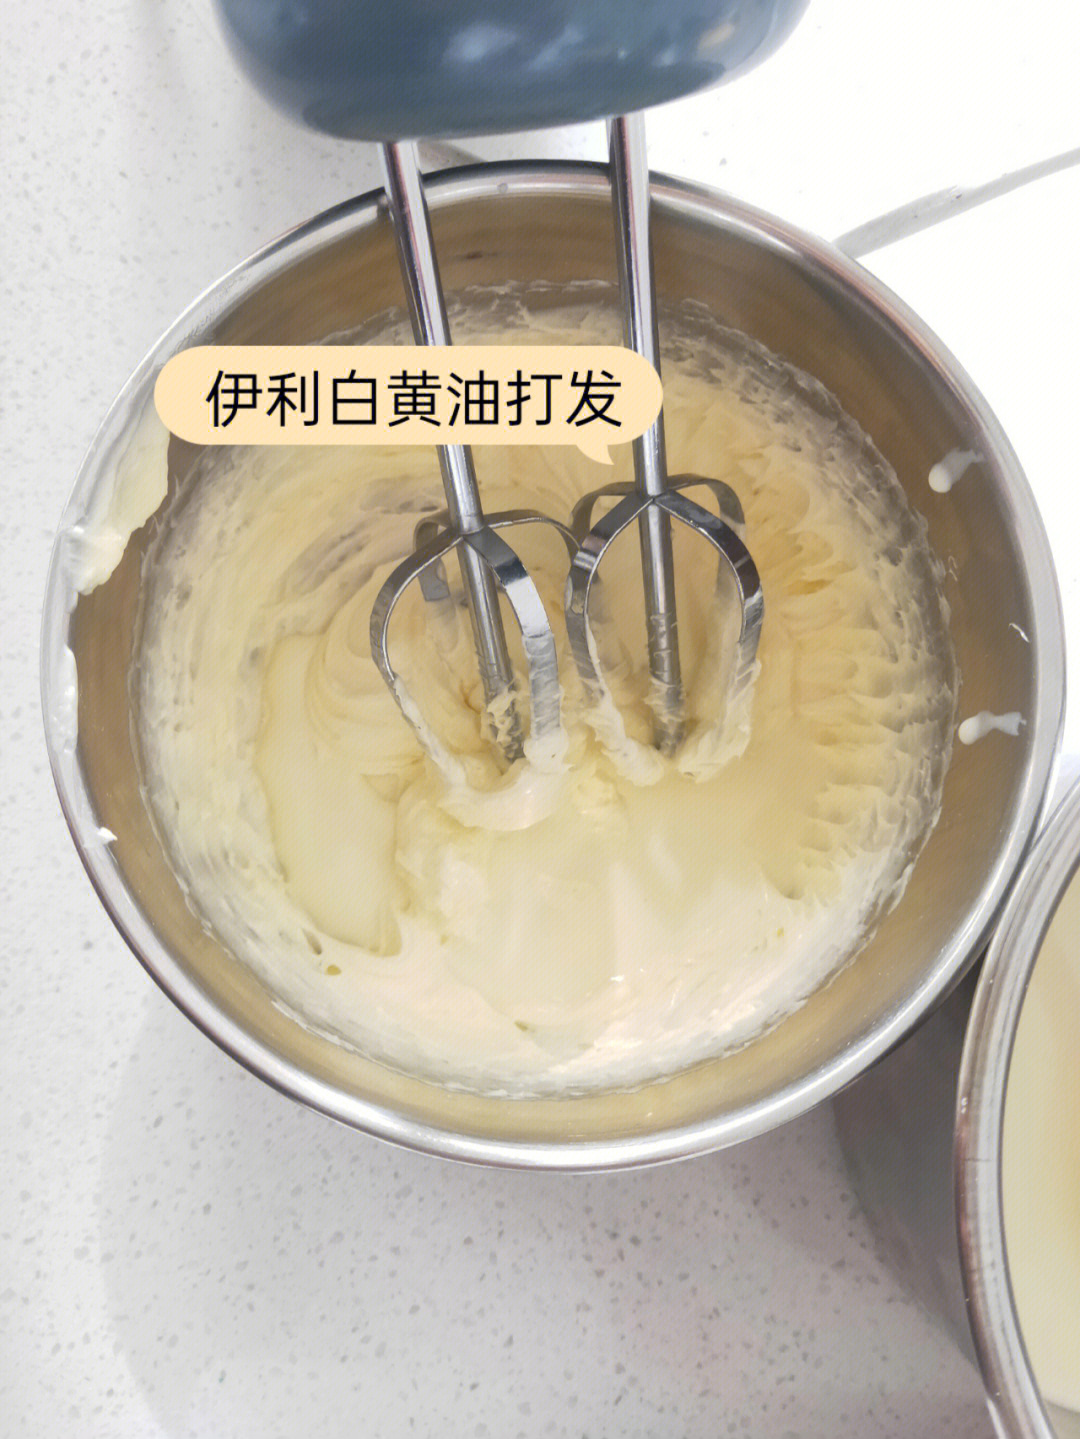 奶油霜制作过程